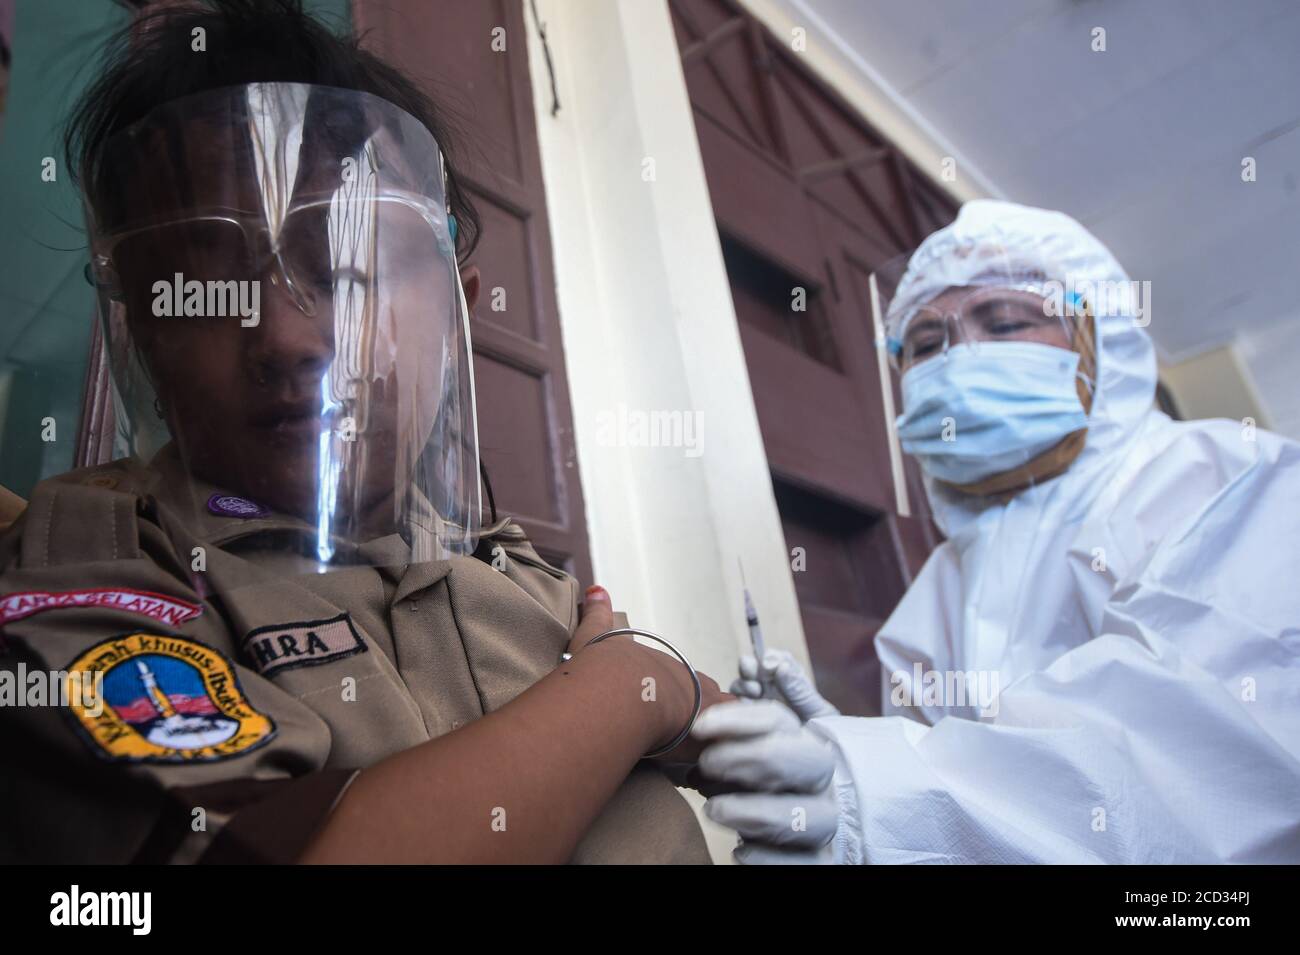 (200826) -- JAKARTA, 26 agosto 2020 (Xinhua) -- uno studente elementare che indossa uno scudo facciale riceve un vaccino contro il morbillo-rosolia (MR) effettuato da un operatore sanitario nell'ambito dell'epidemia di COVID-19 a Giacarta, Indonesia, 26 agosto 2020. I vaccini contro il morbillo-rosolia (MR) vengono somministrati ai giovani come parte del programma del governo indonesiano per offrire un'adeguata immunizzazione dei bambini scolastici. (Xinhua/Agung Kuncahya B.) Foto Stock